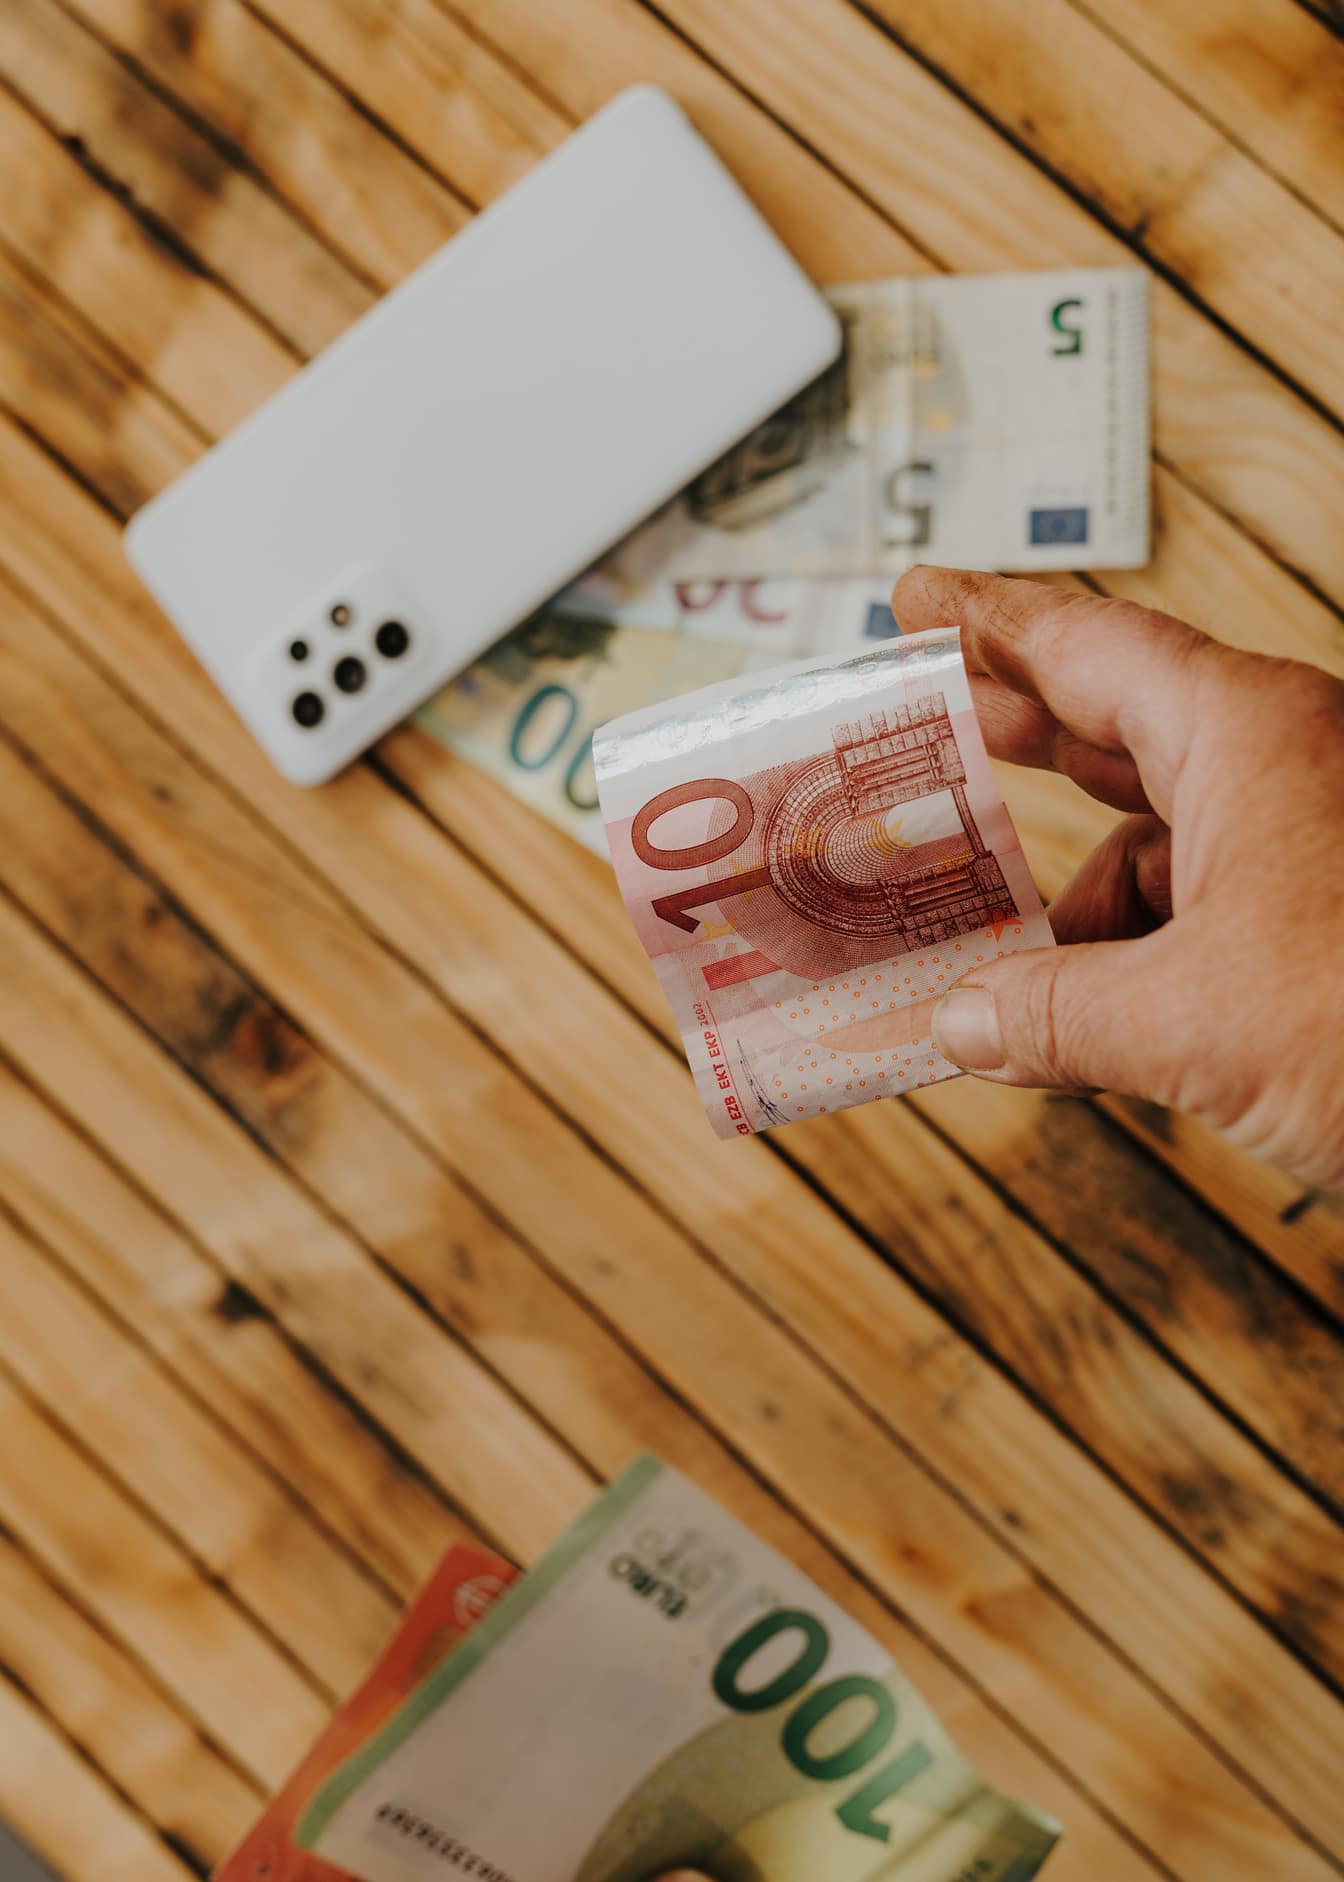 Рука, держащая в фокусе банкноту в десять евро (€10)